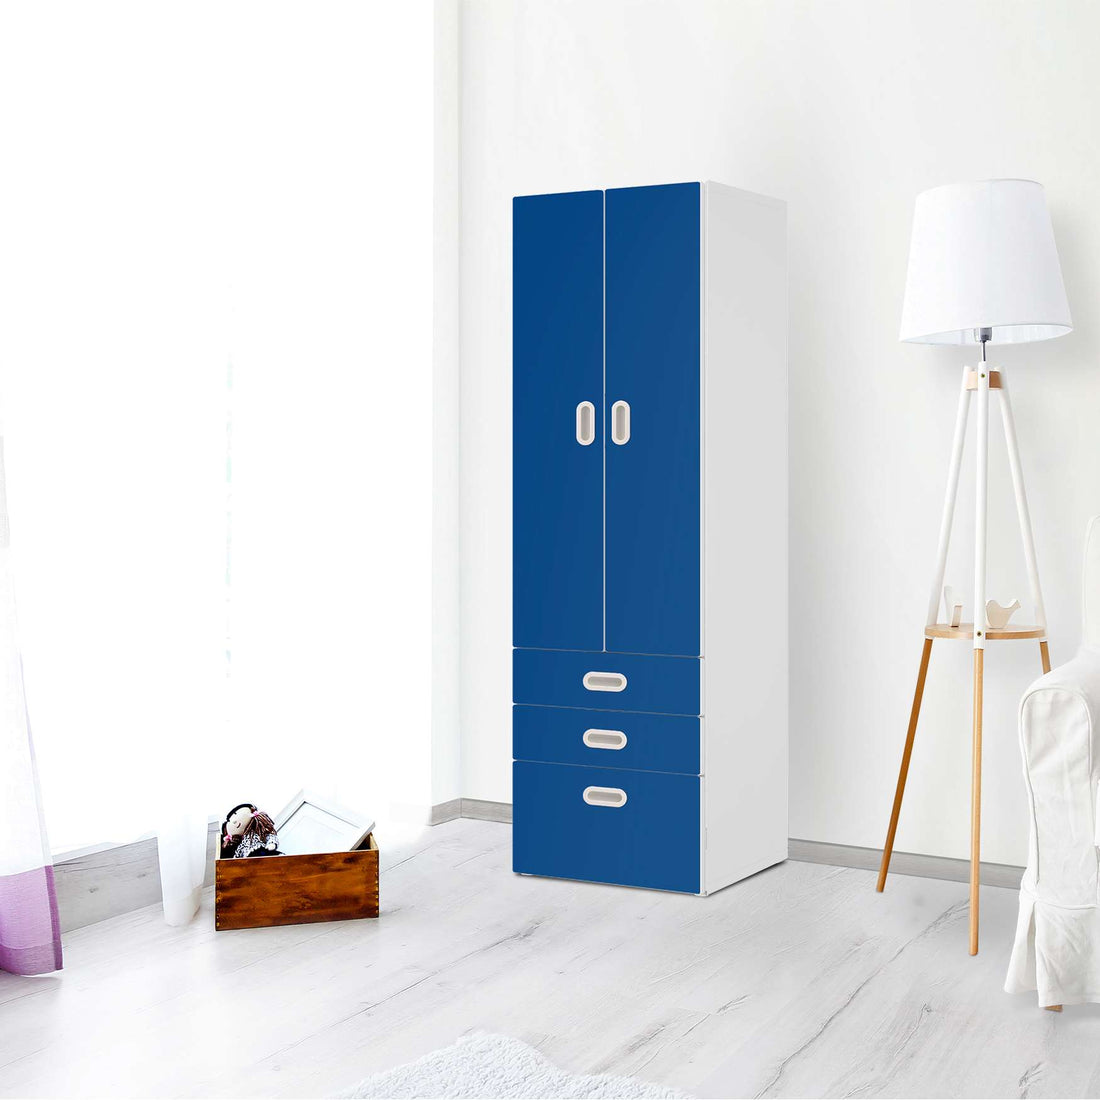 Klebefolie Blau Dark - IKEA Stuva / Fritids kombiniert - 3 Schubladen und 2 große Türen - Kinderzimmer